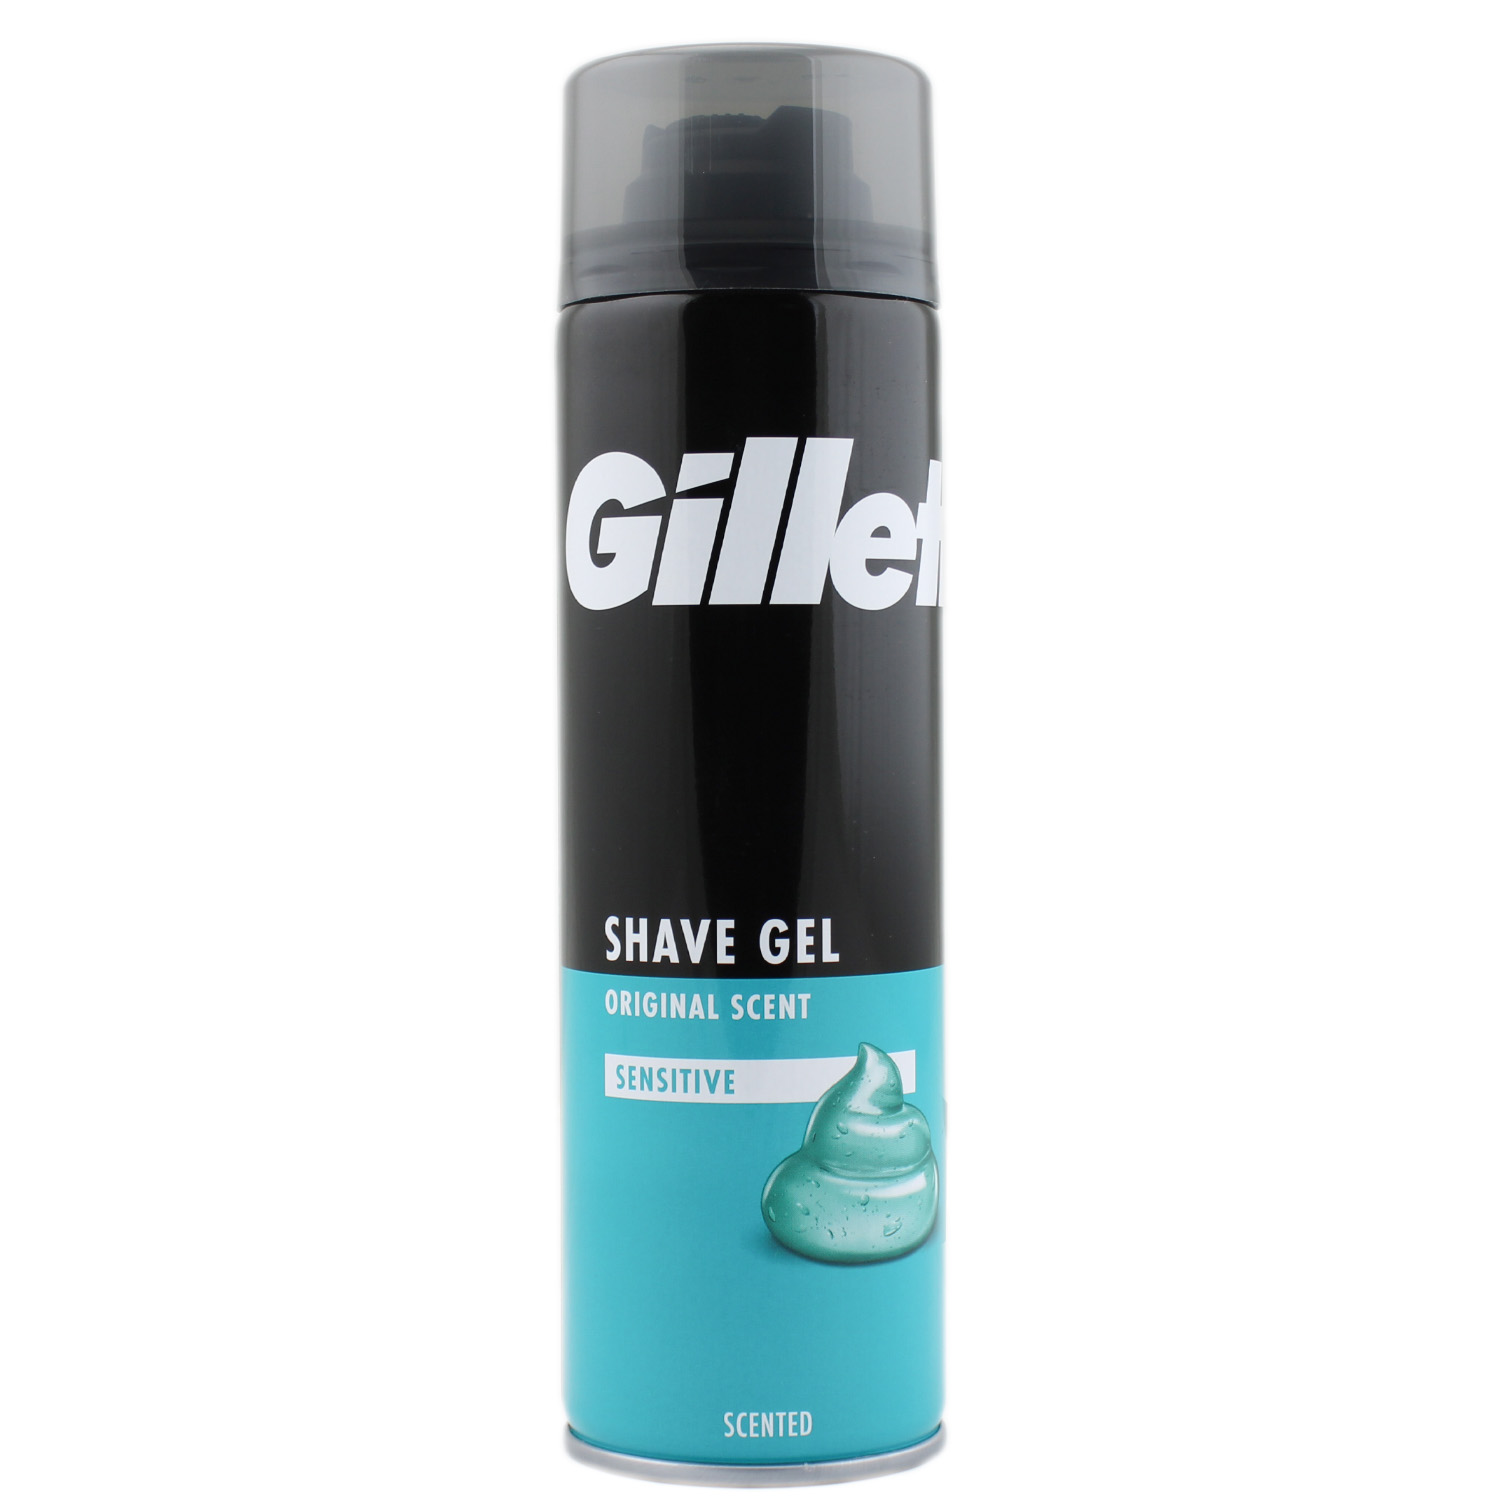 Gillette Sensitive Rasiergel 200ml